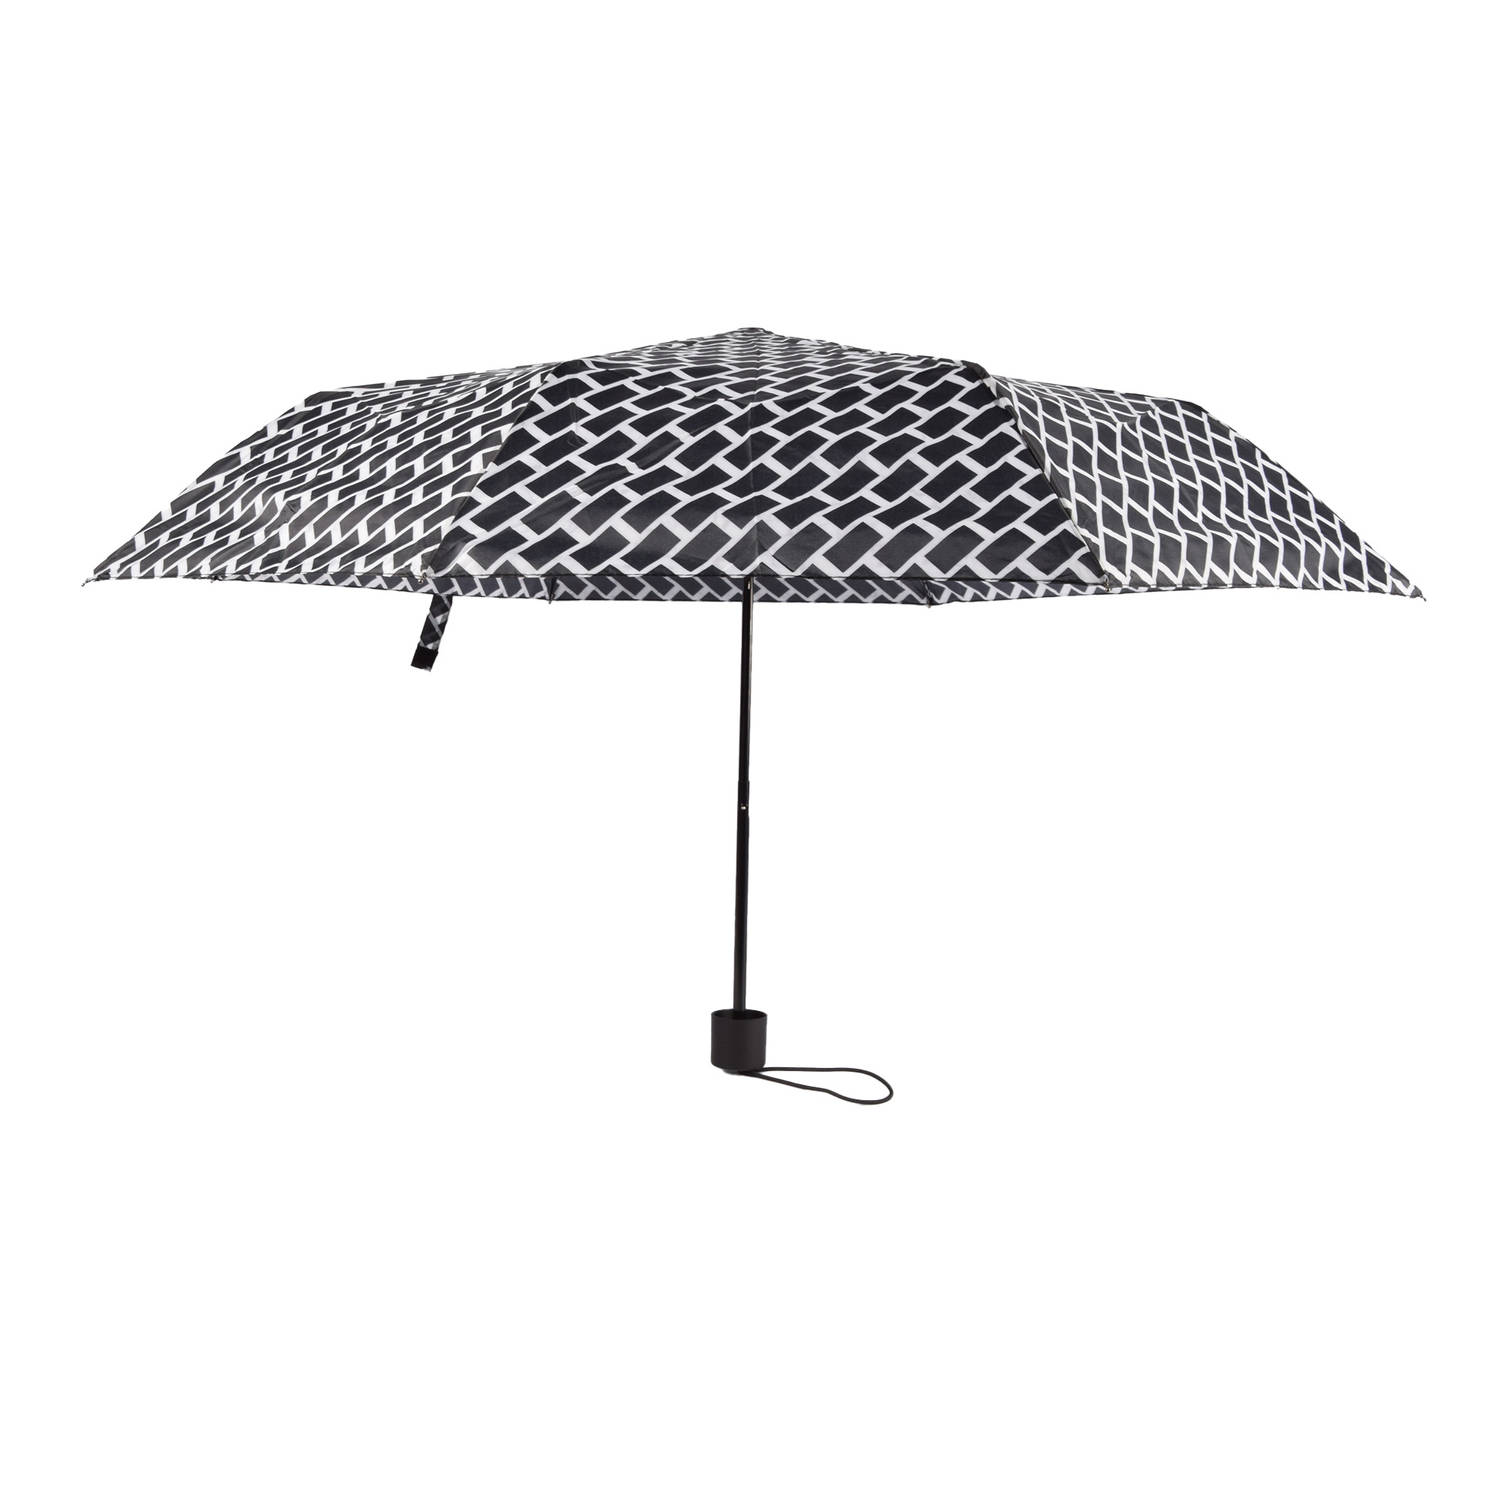 Chique Opvouwbare Paraplu met Handopening - Stenen Print Dessin - Ø 90 cm - Duurzaam Glasfiber Eindstuk Balein - Zwart Kunststof Handvat - Waterbestendig Polyester Doek - Inclusief